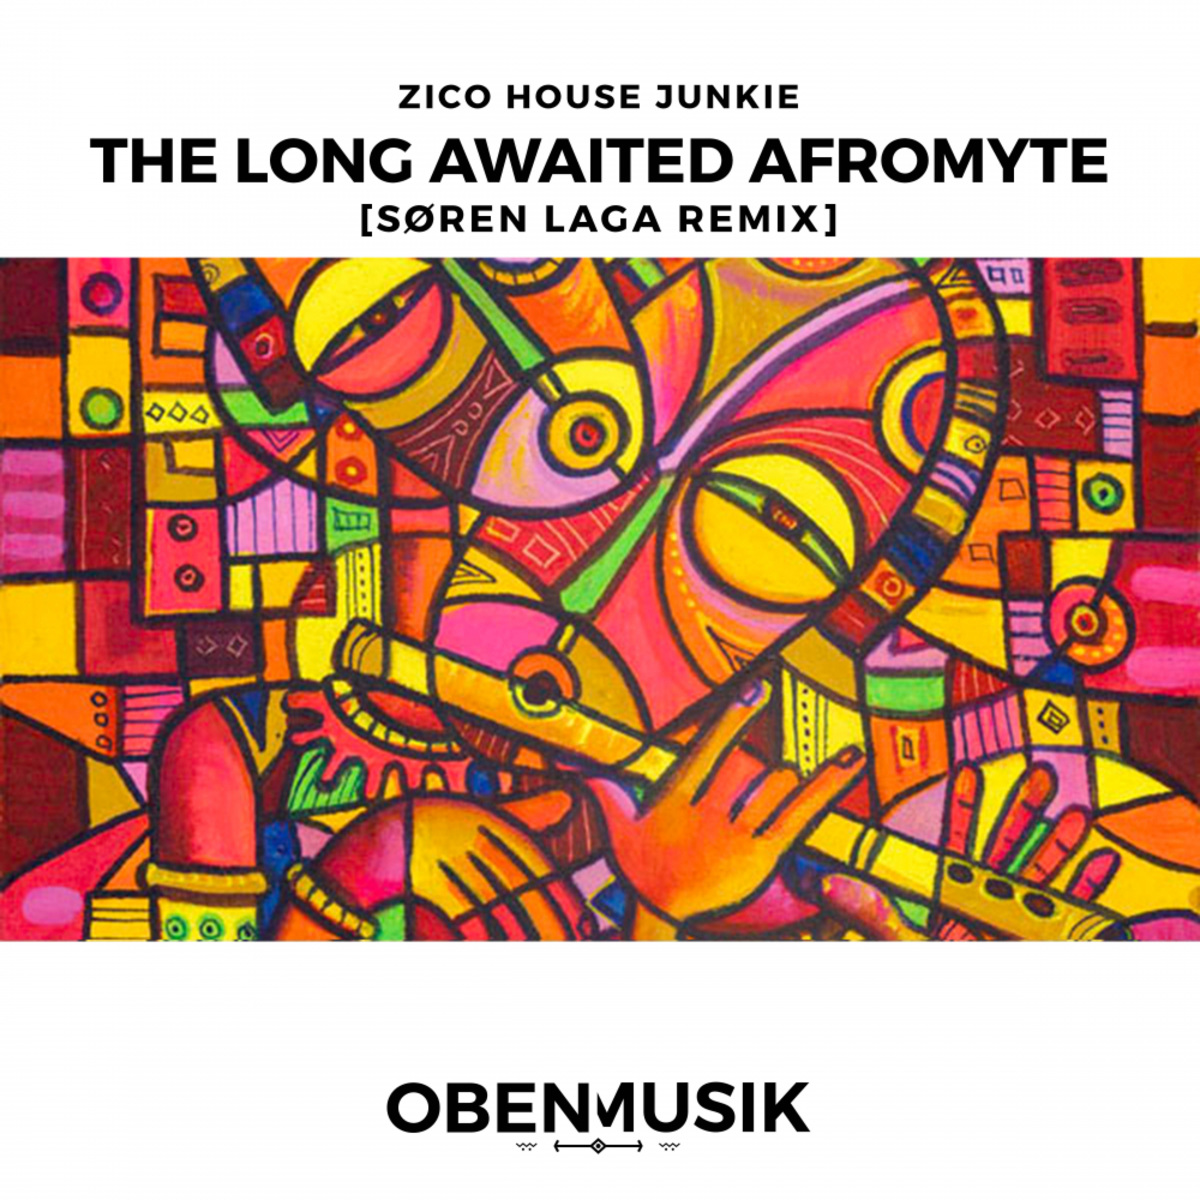 Zico House Junkie - The Long Awaited Afromyte (Søren Laga Remix) / Obenmusik